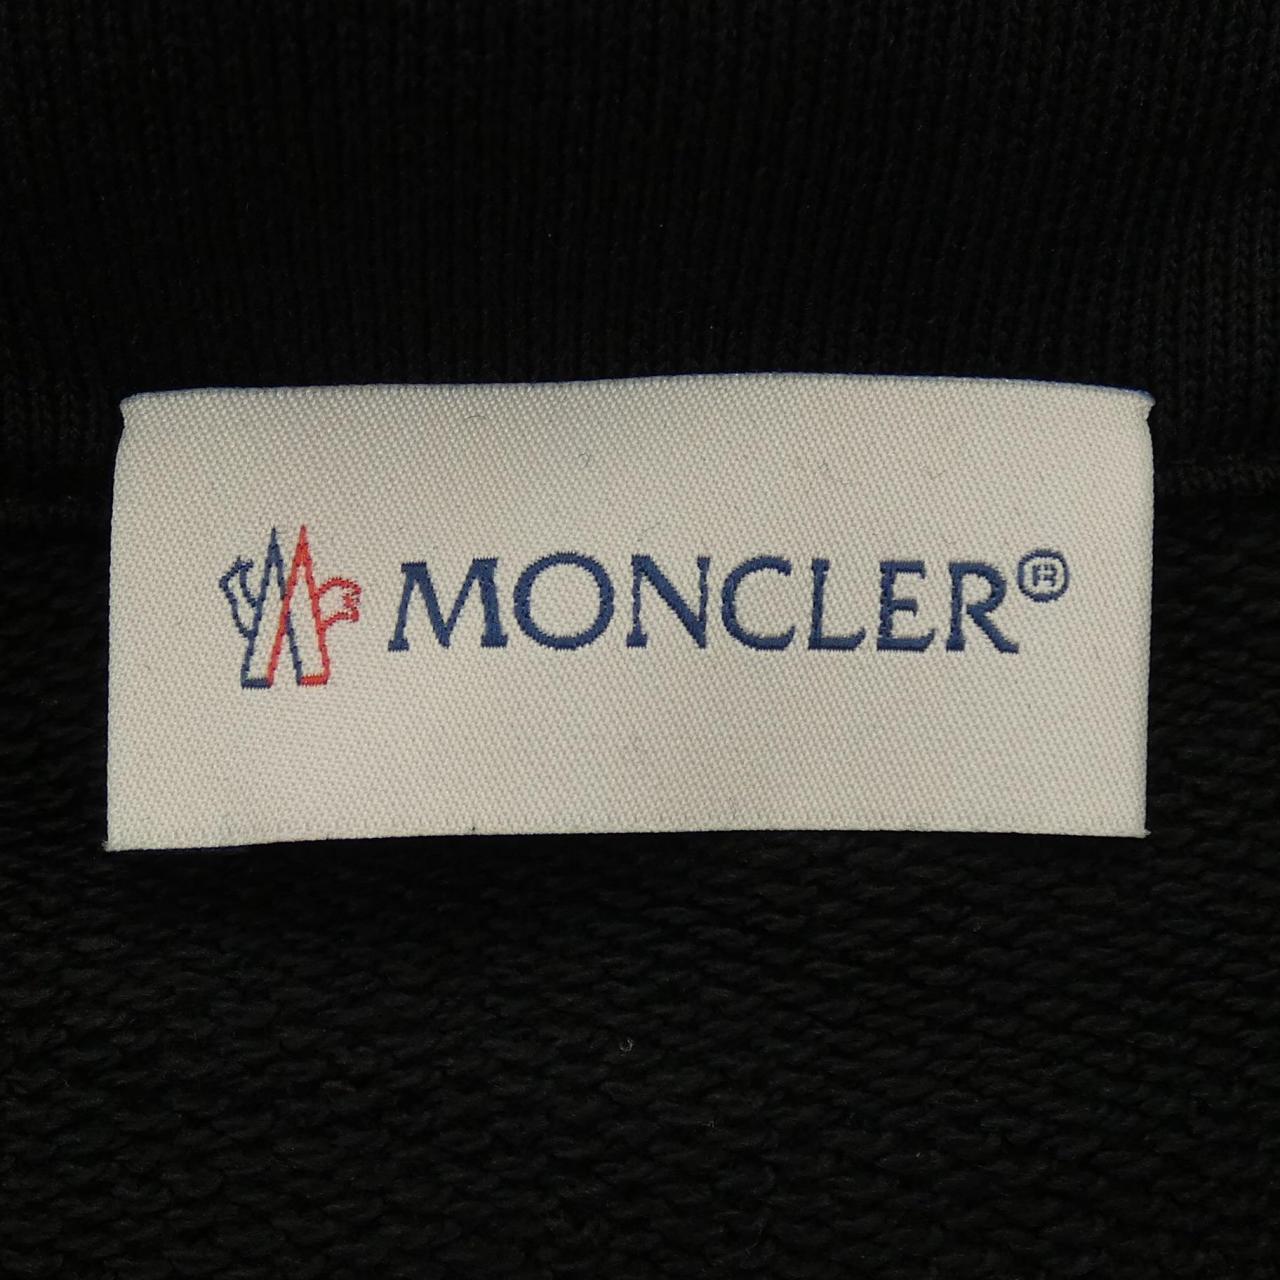 モンクレール MONCLER パーカー